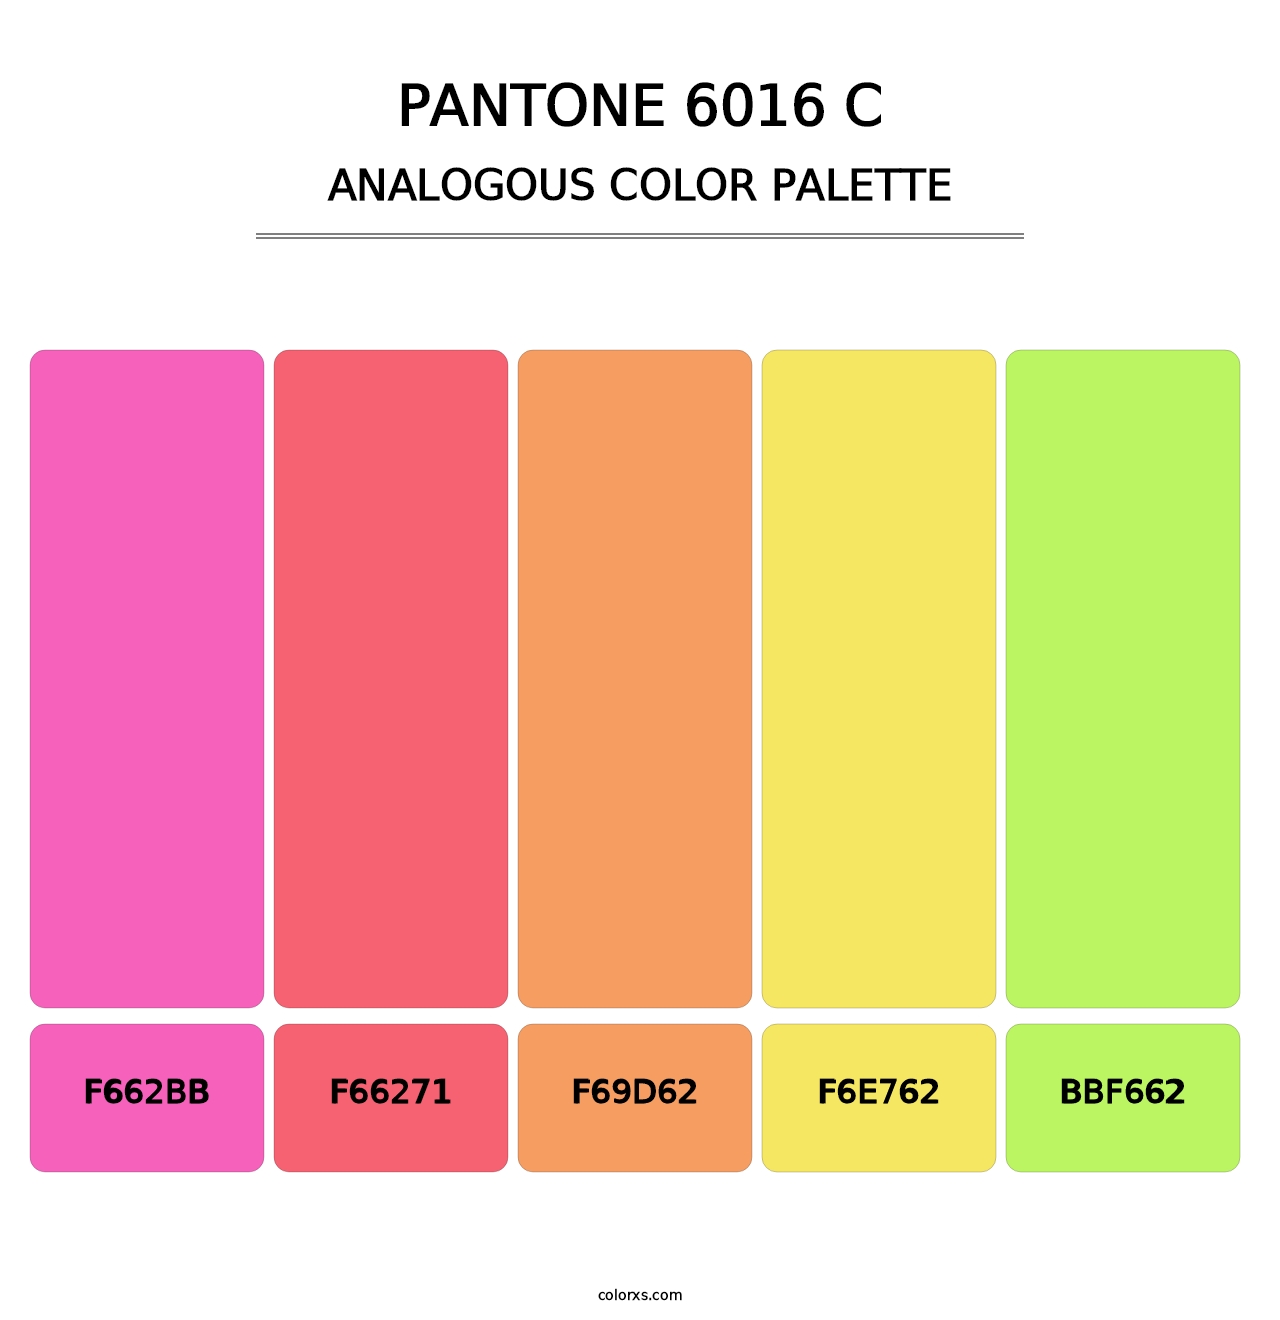 PANTONE 6016 C - Analogous Color Palette